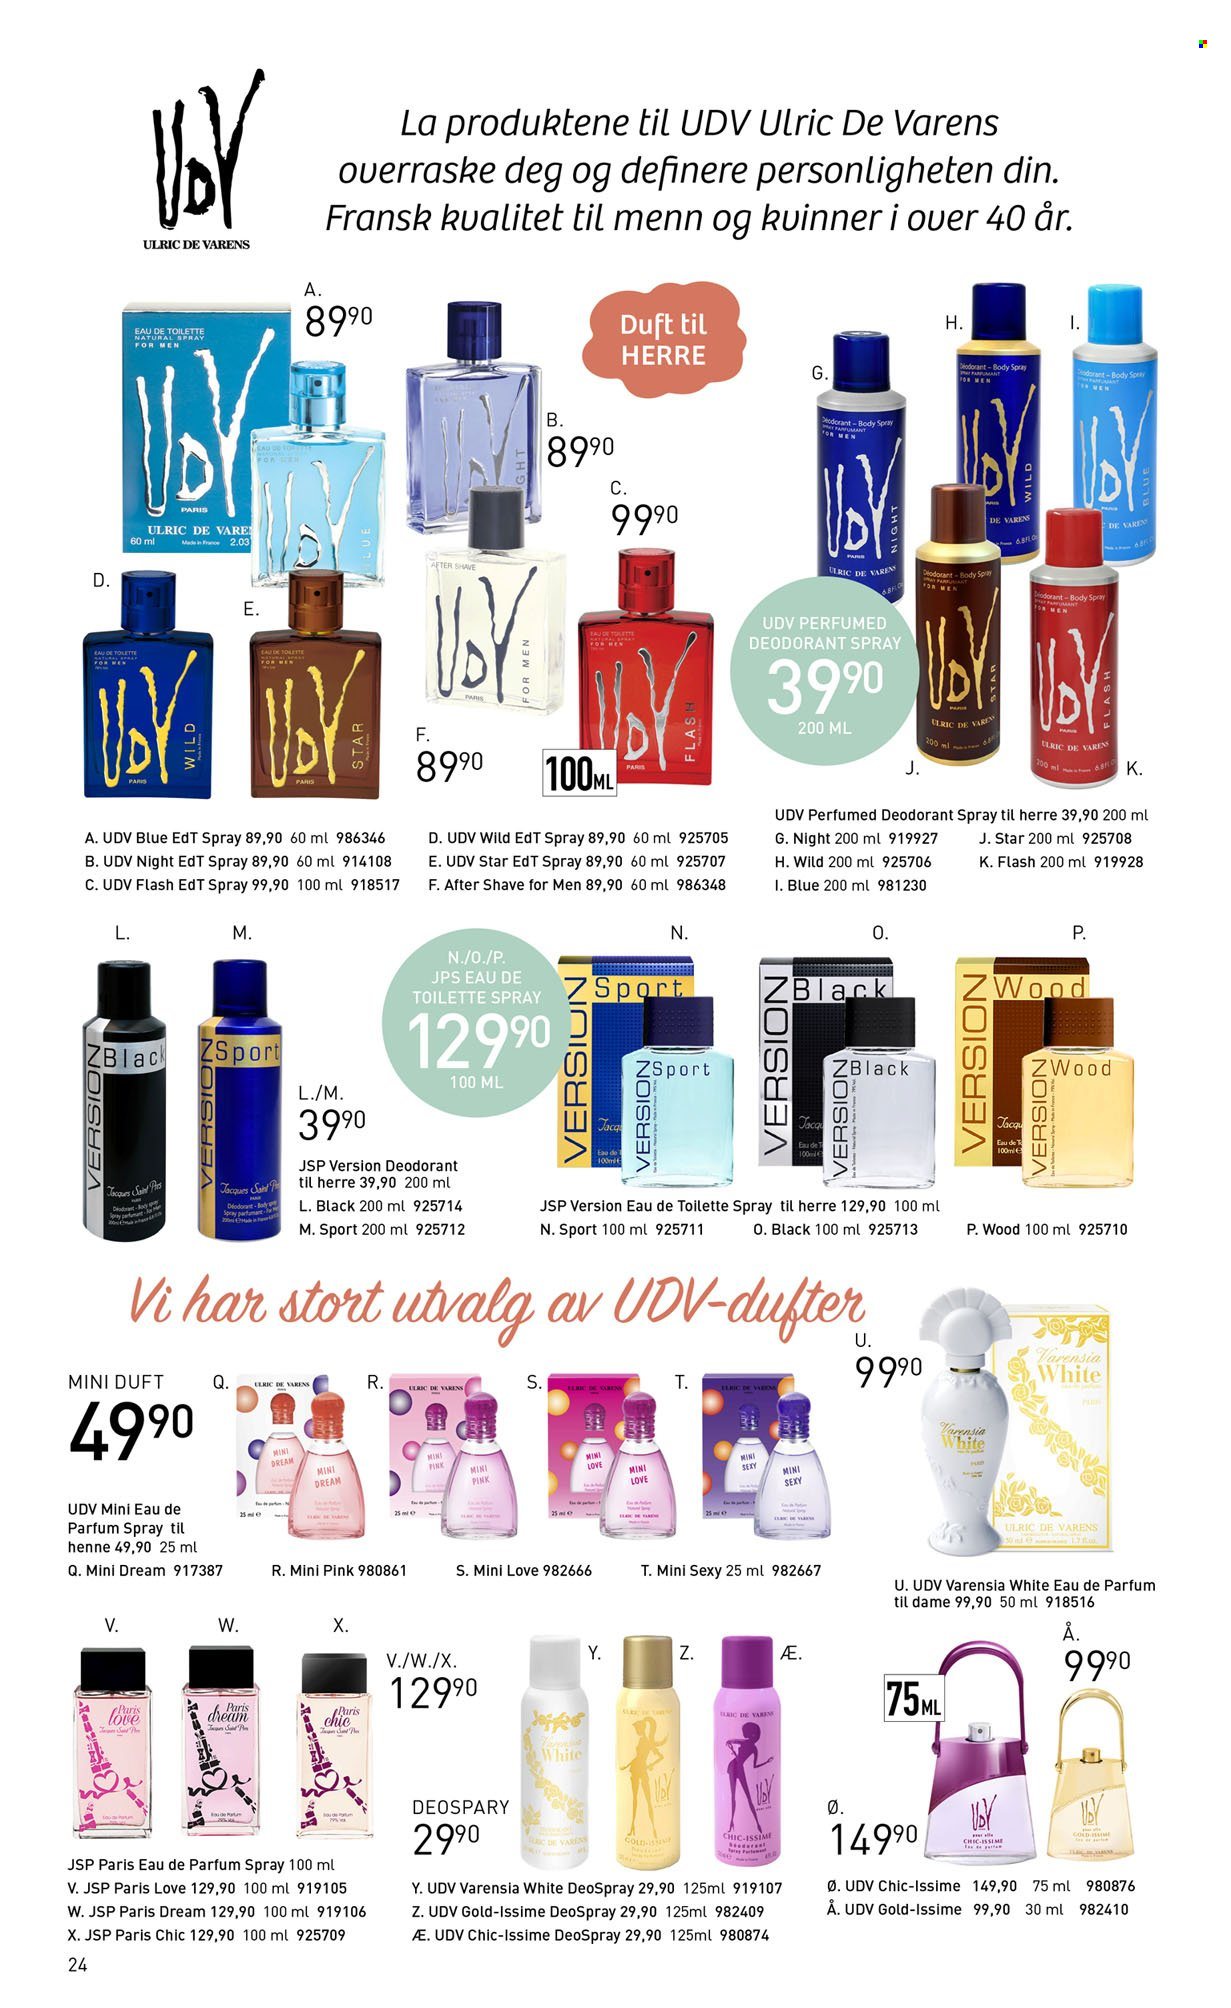 Kundeavis Sparkjøp - Produkter fra tilbudsaviser - after shave, body spray, eau de parfum, eau de toilette, deodorant. Side 24.